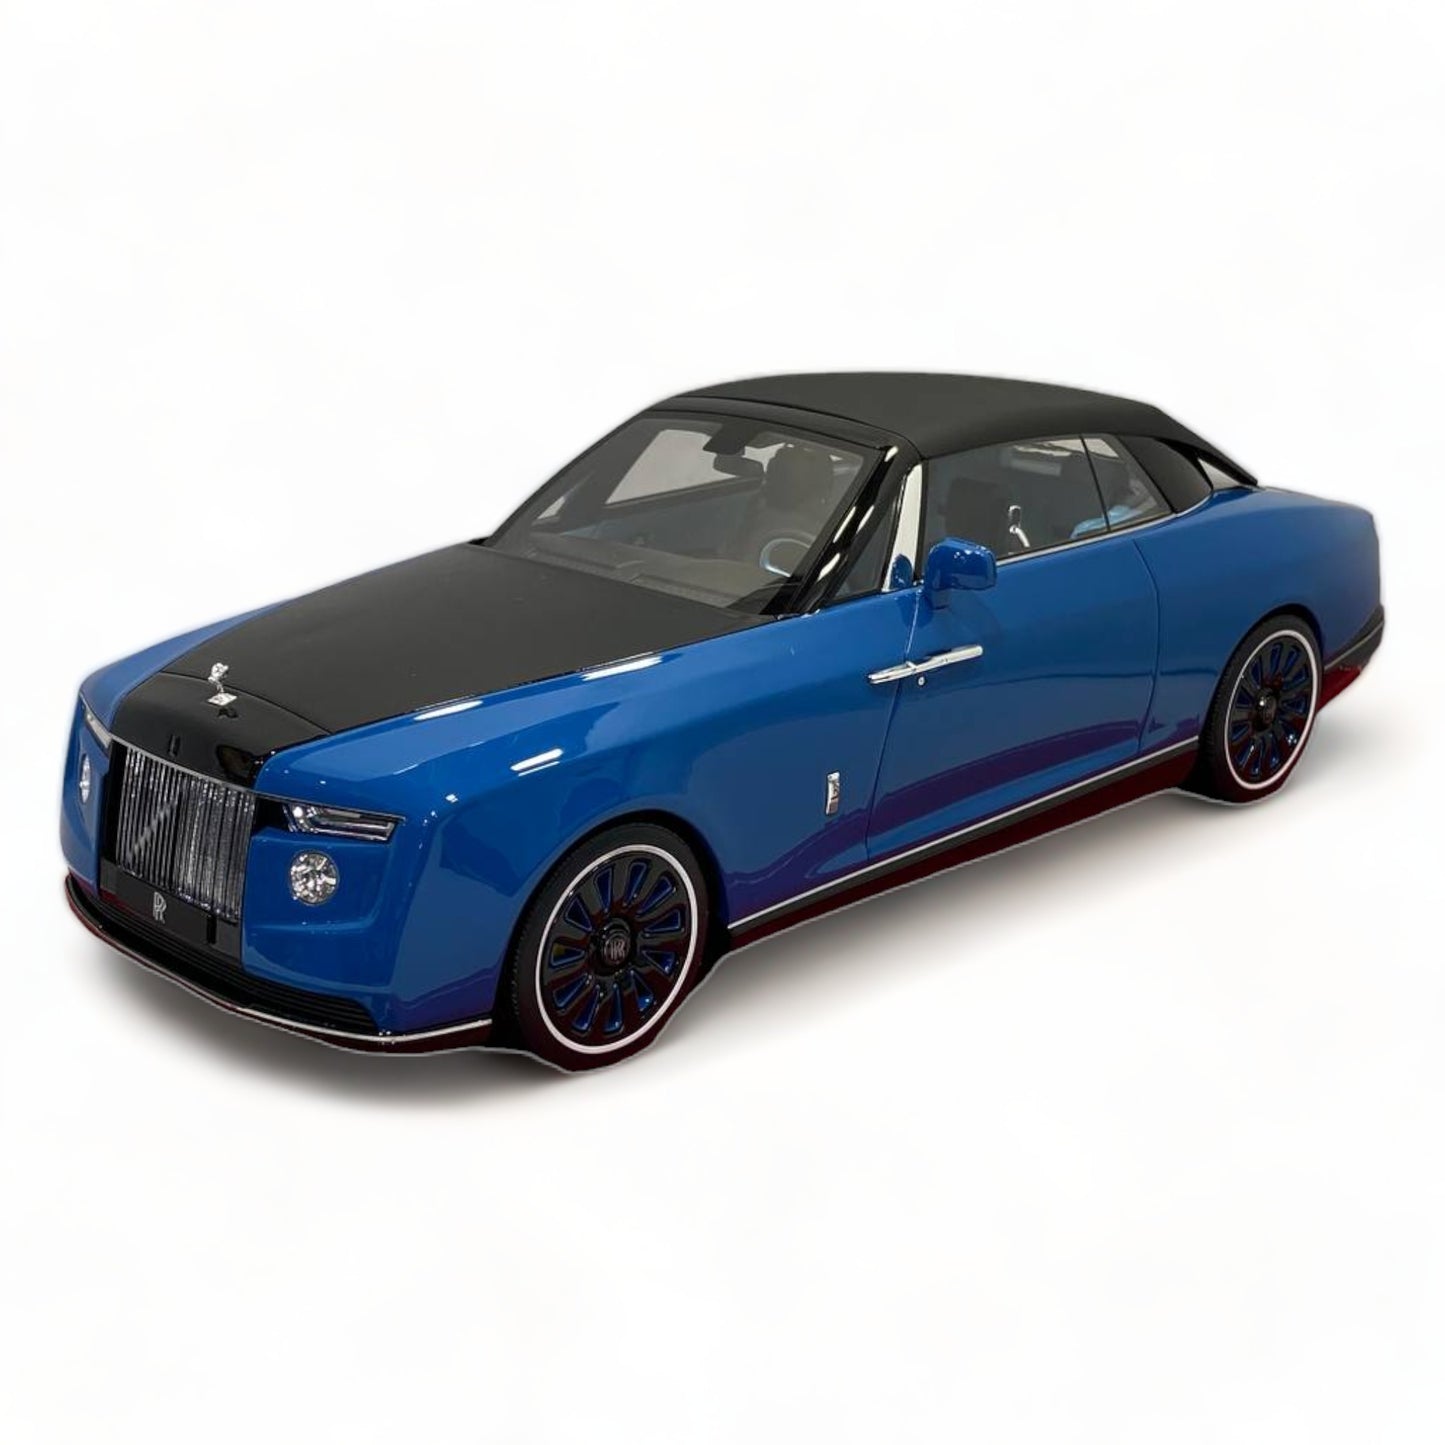 1/18 Rolls-Royce BOAT TAIL Blue Scale Model Car|Sold in Dturman.com Dubai UAE.